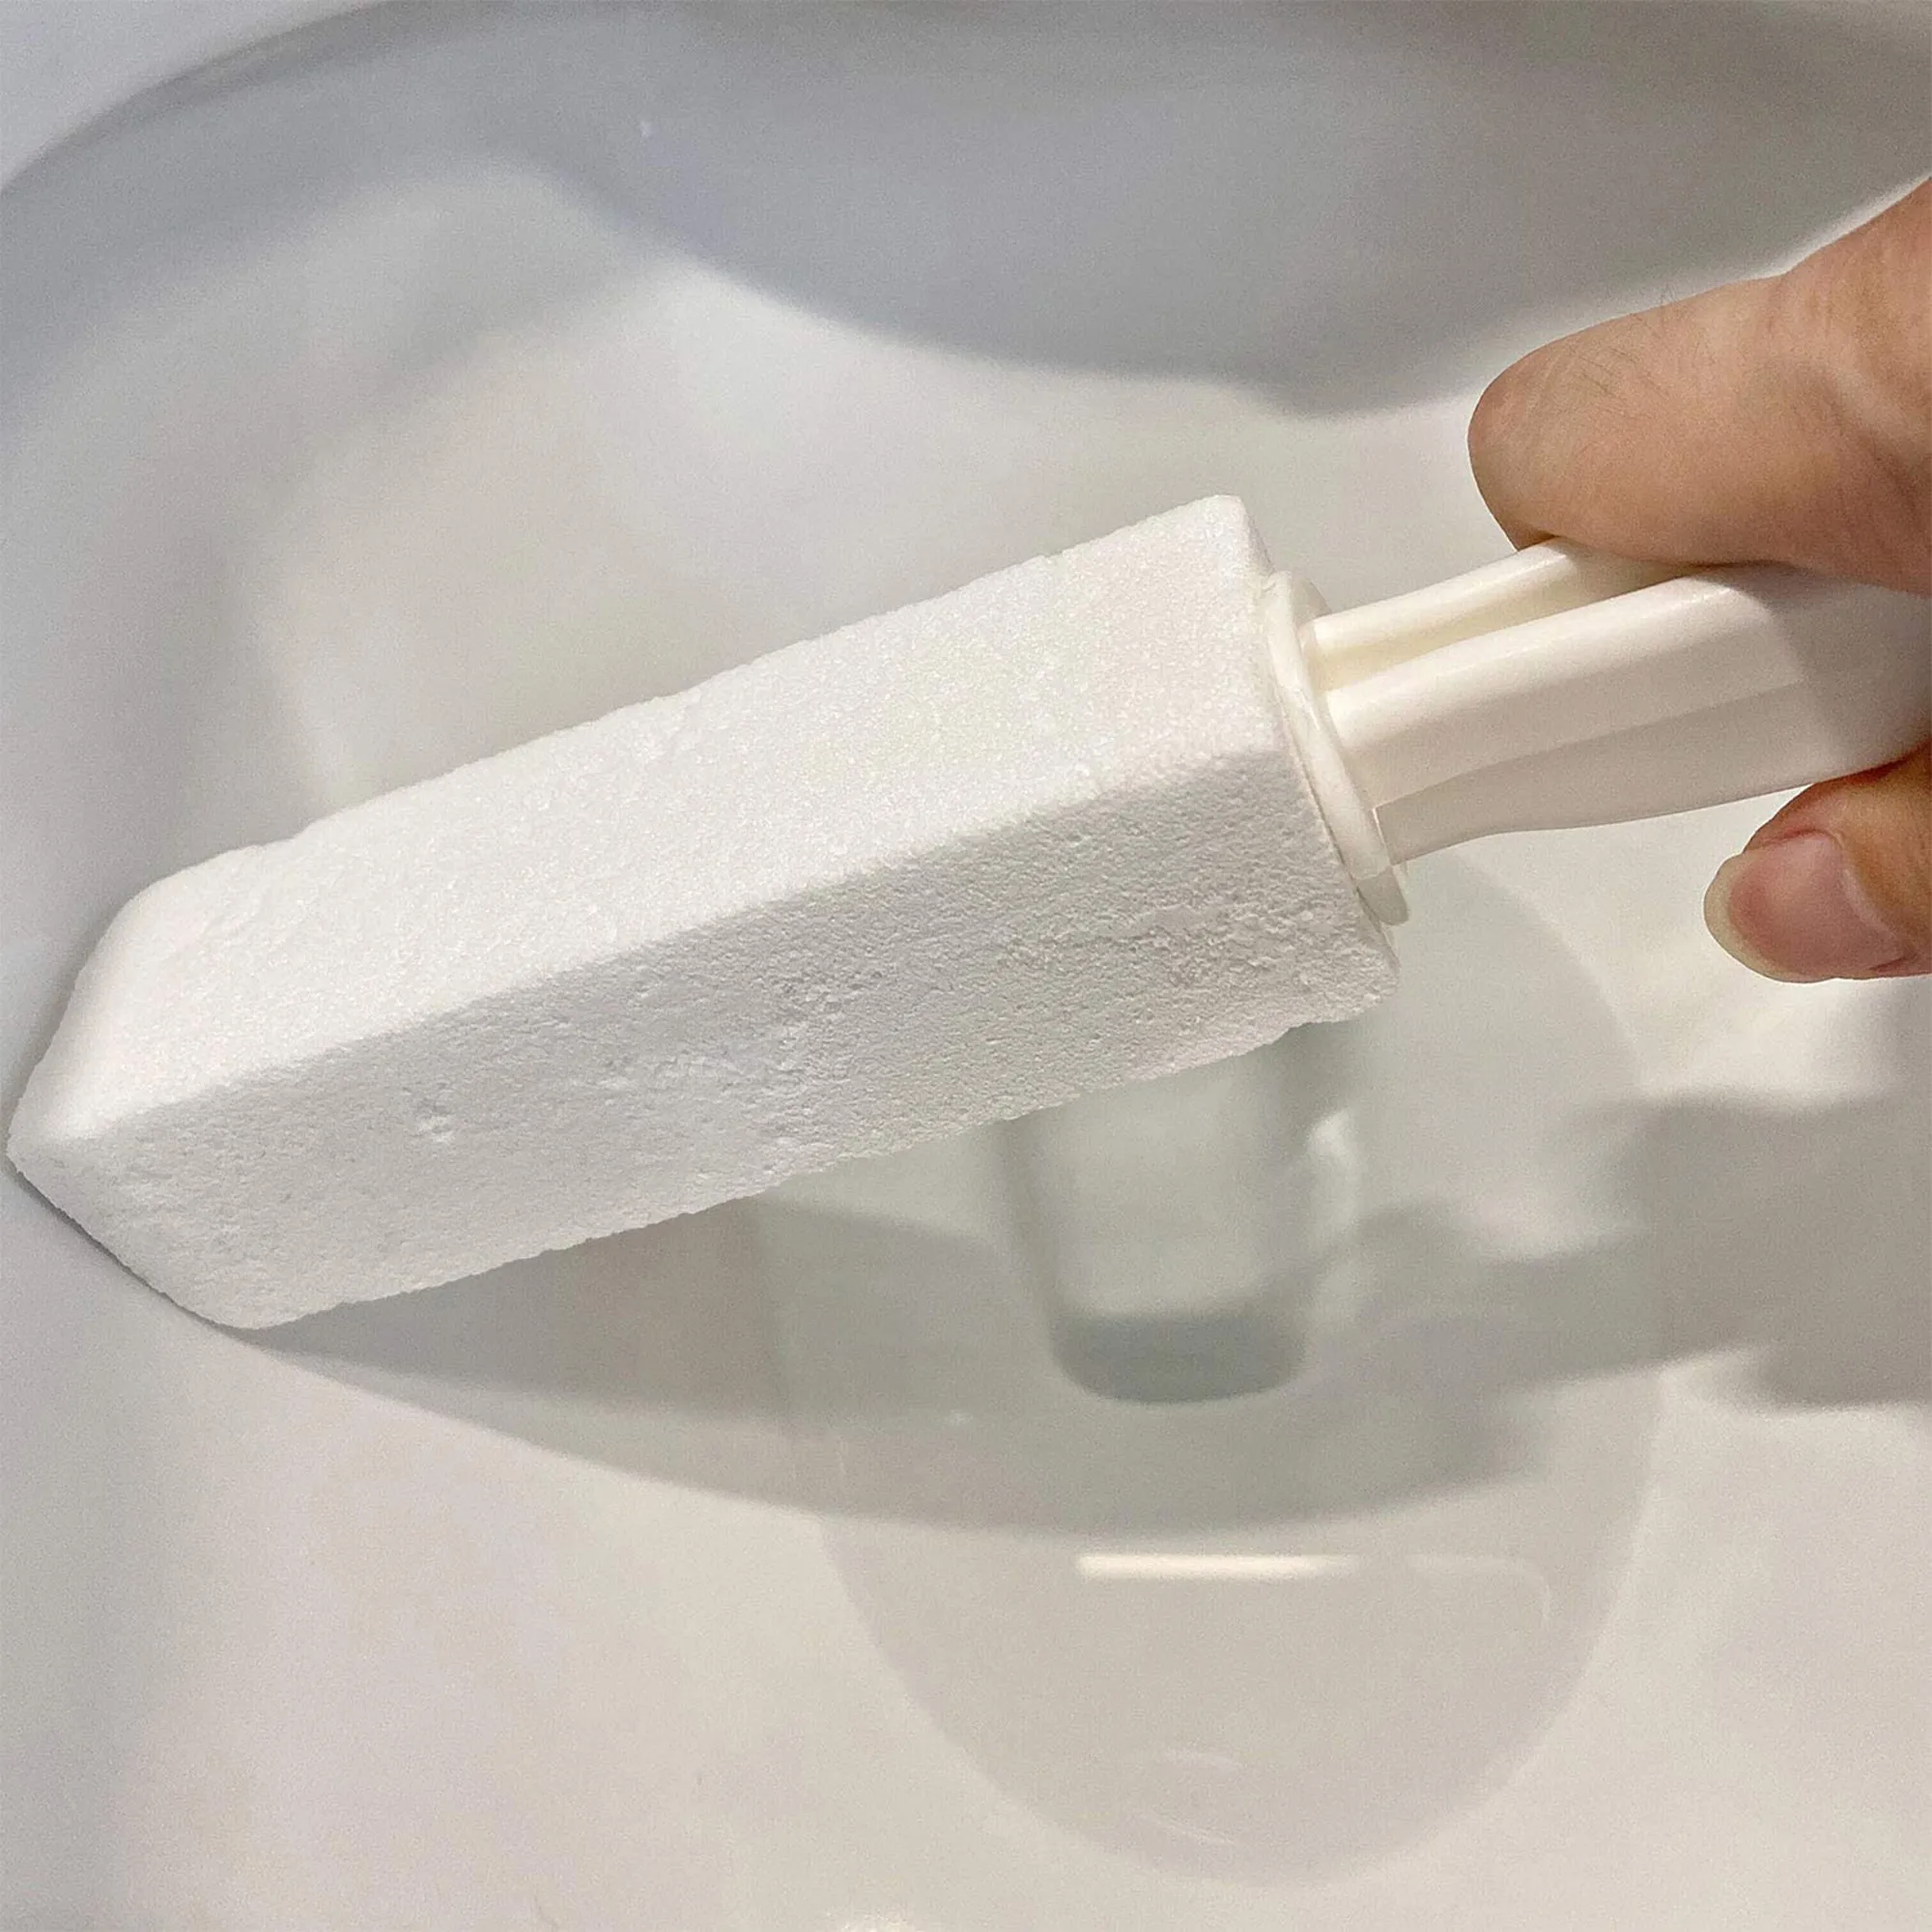 

Щетка для туалета с пемзой, бытовой очиститель для унитаза, однотонное удобное средство для удаления пятен накипи с длинной пластиковой ручкой